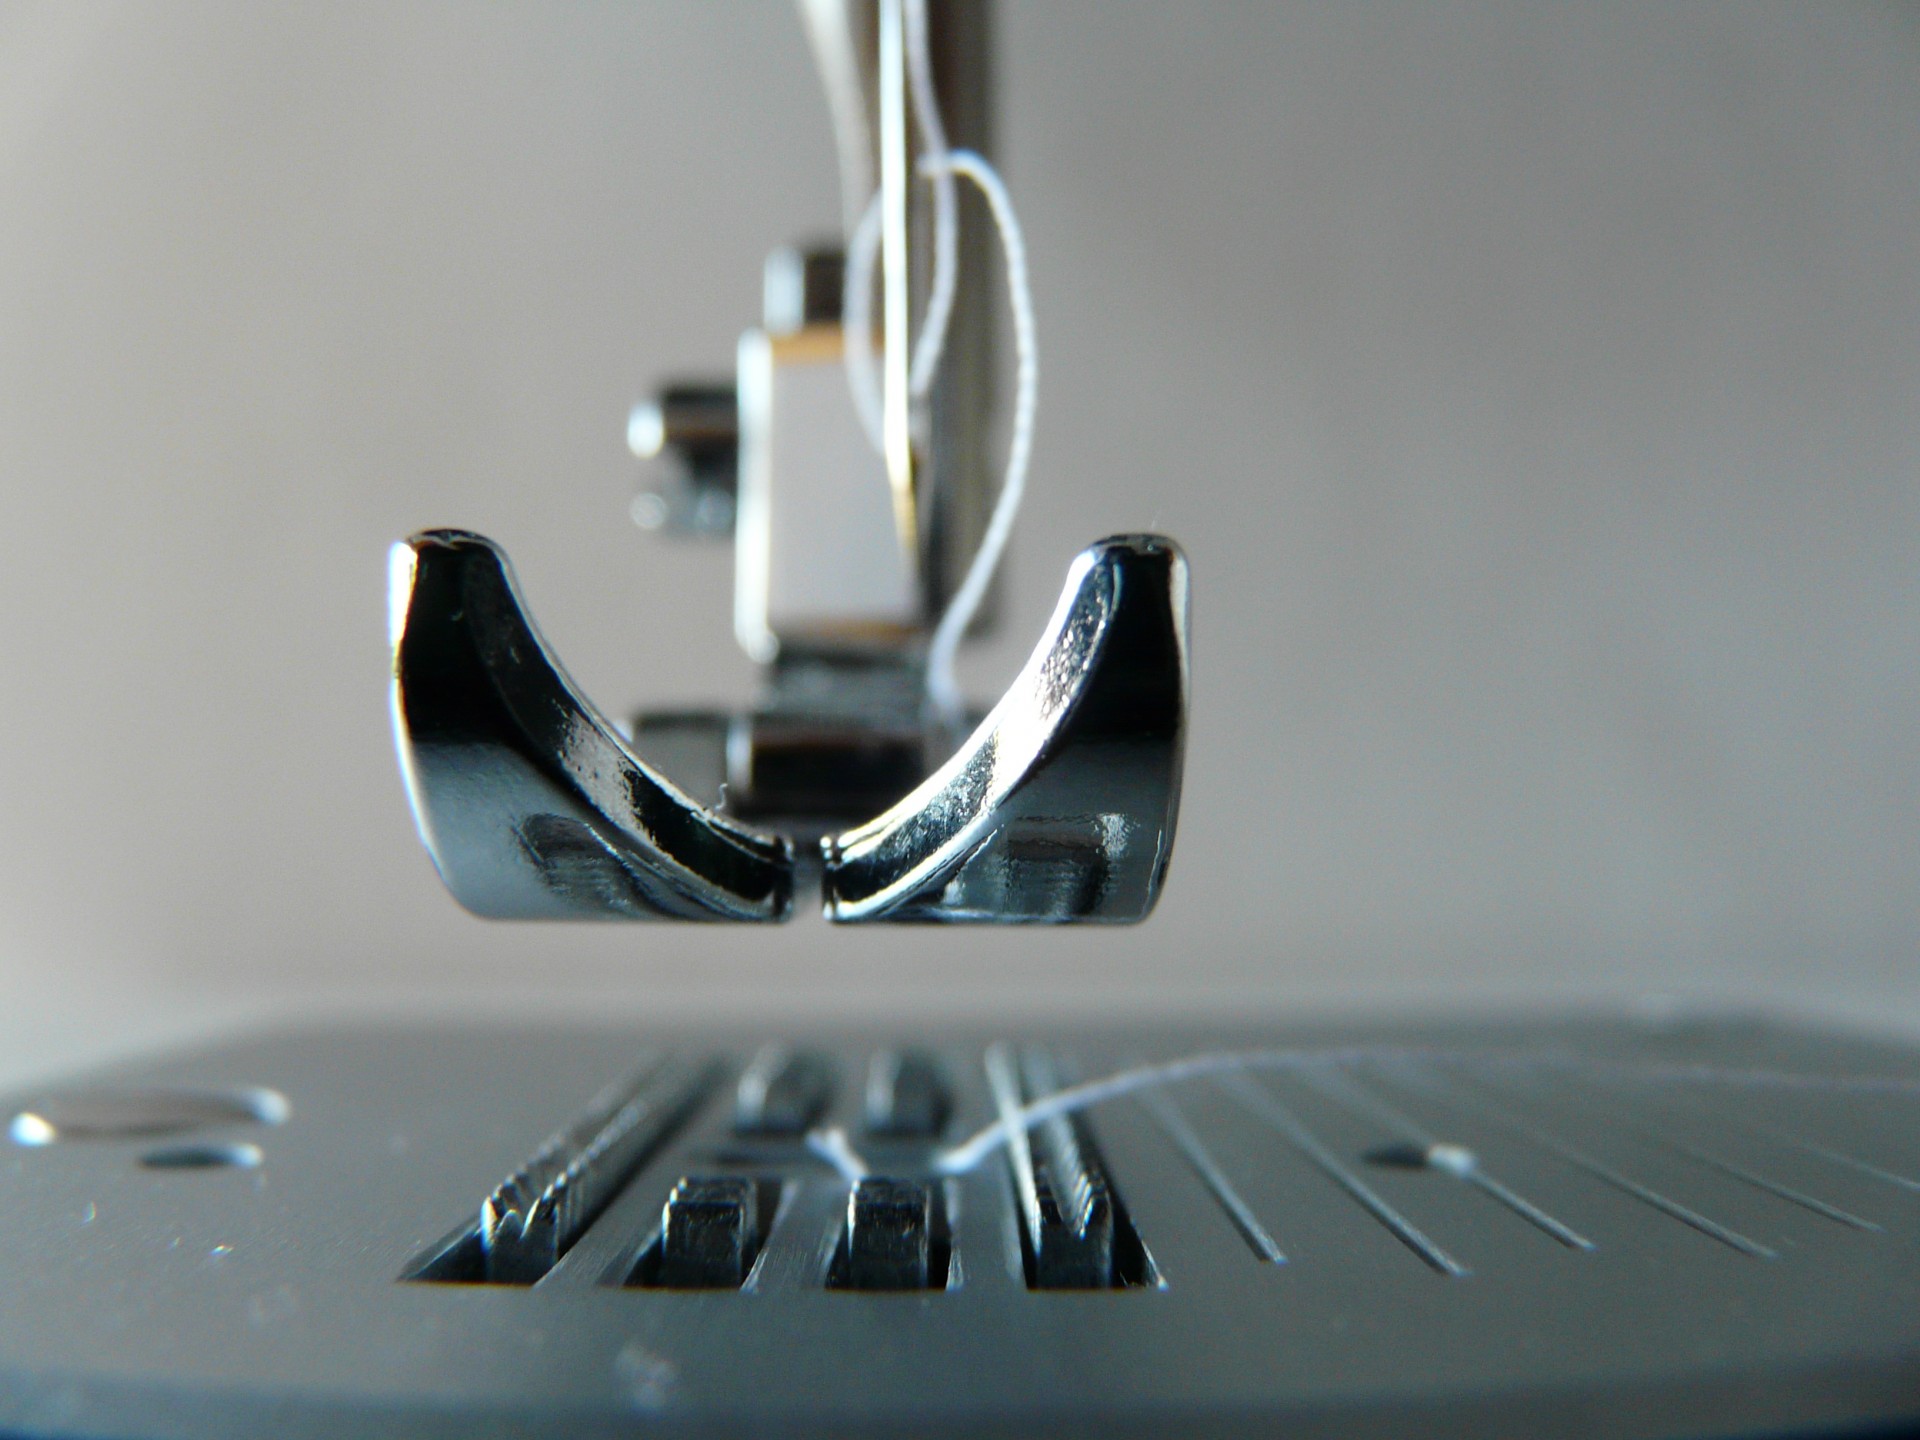 sewing machine close-up free photo